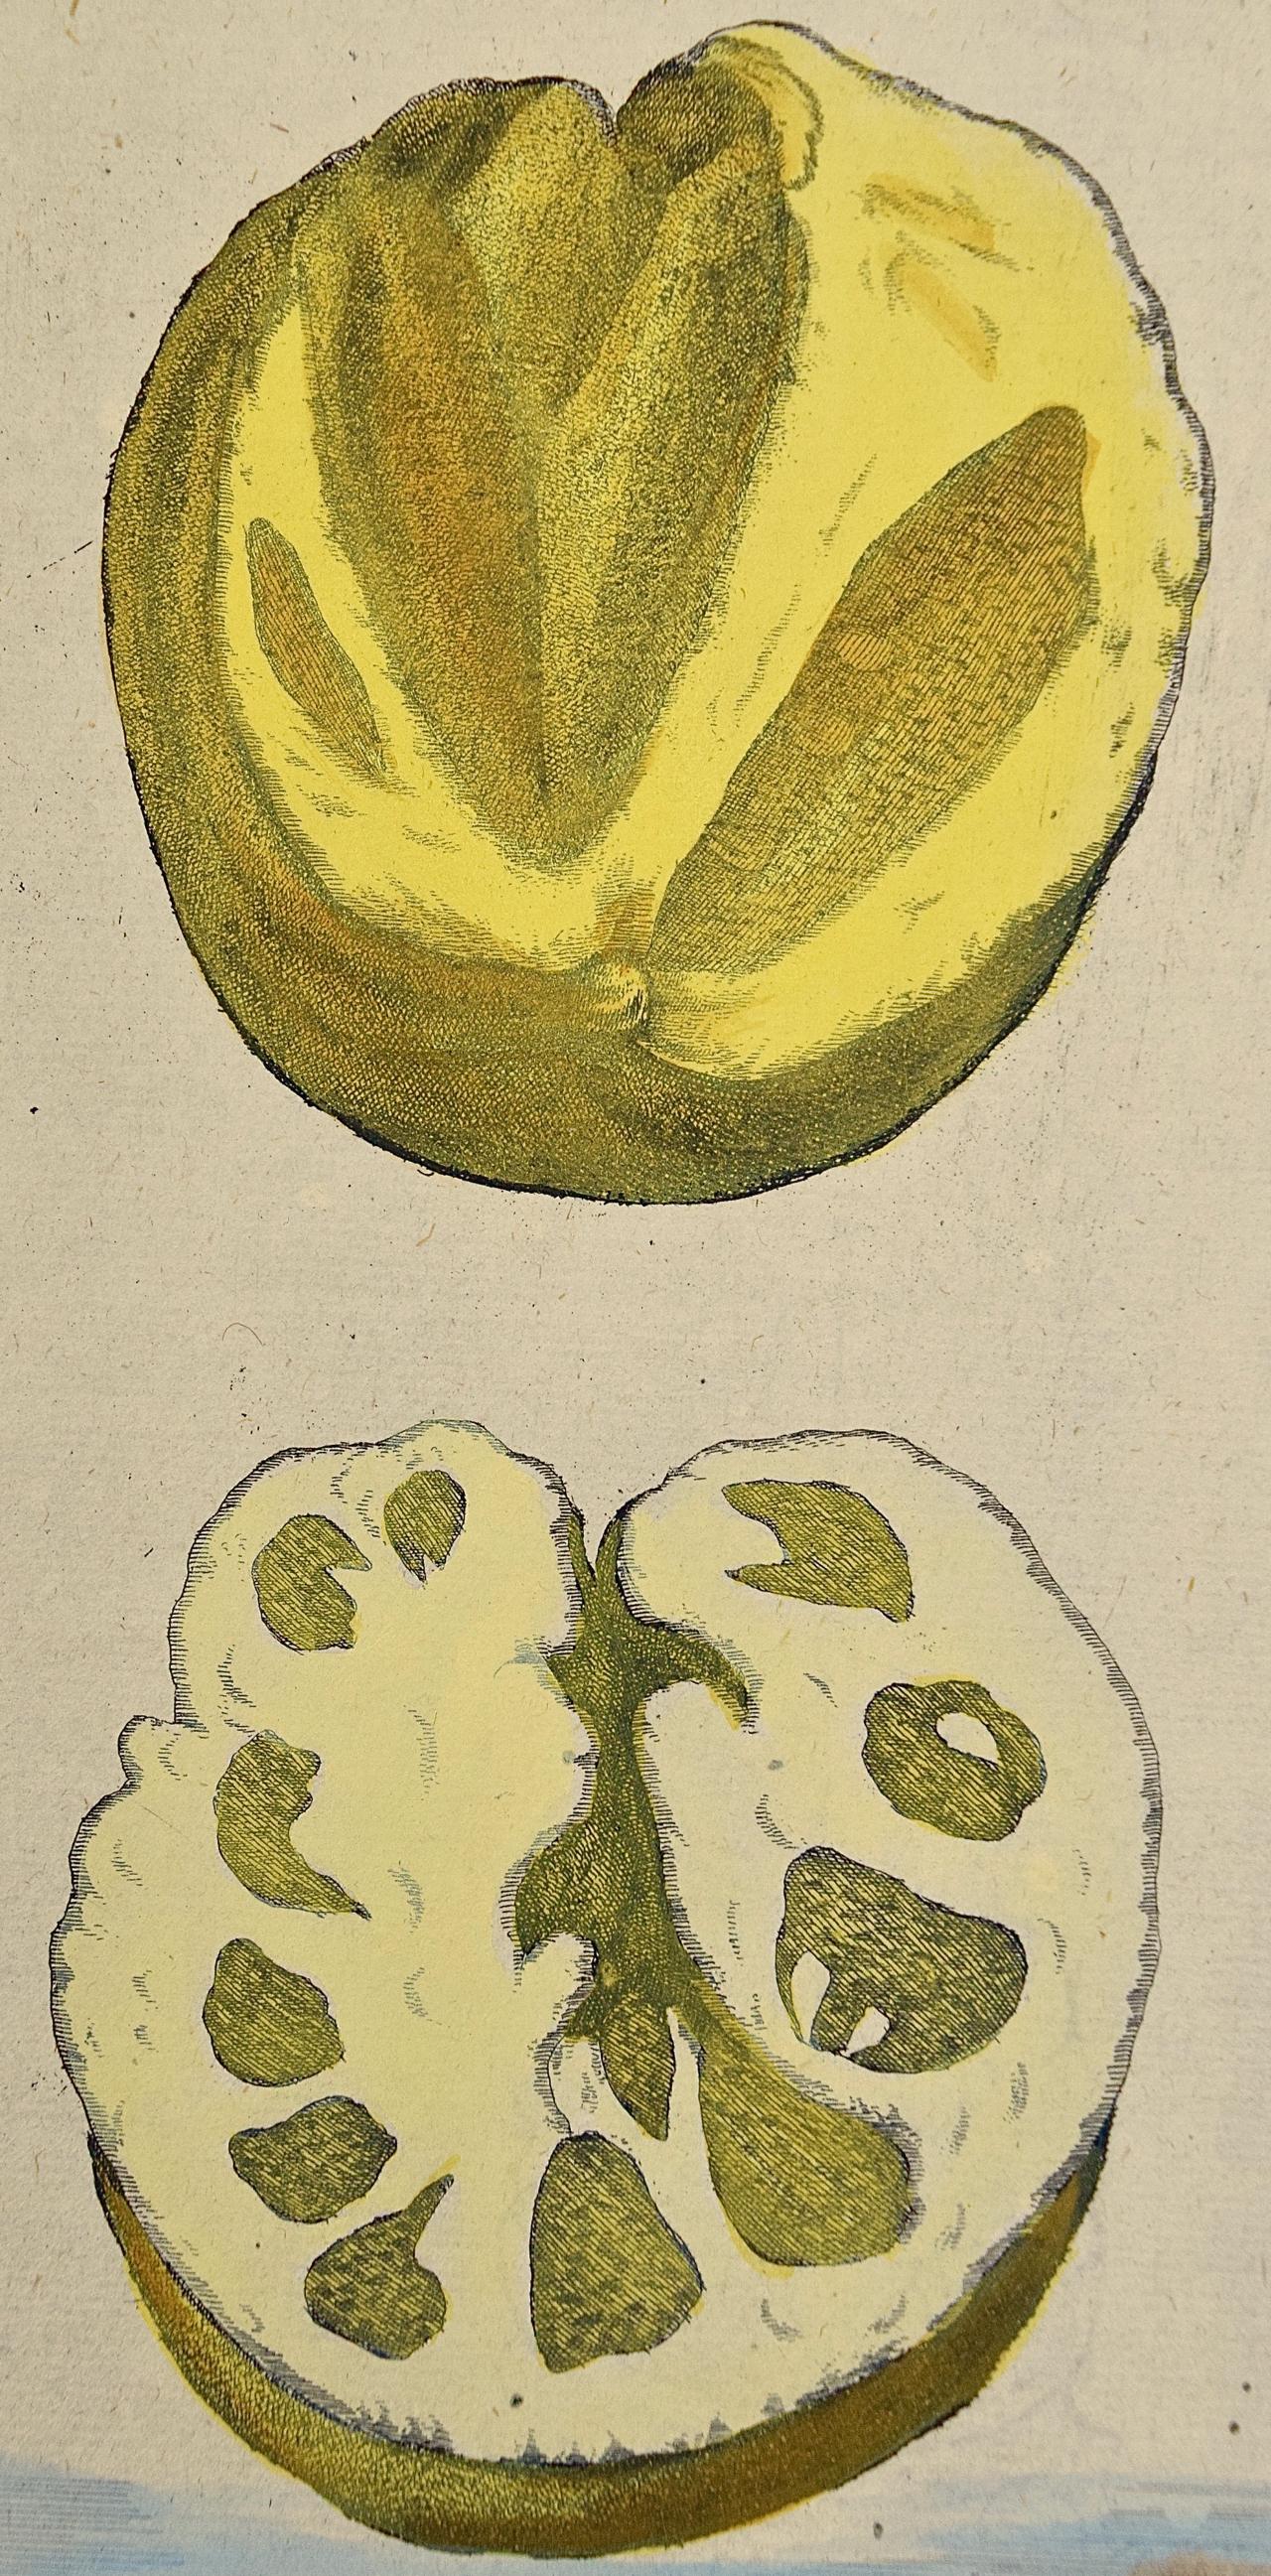 Gravure à la main de citrons « La parte interiore » (La partie intérieure) de Volckamer du début du 18e siècle, colorée à la main - Print de Johan Christoph Volkhamer